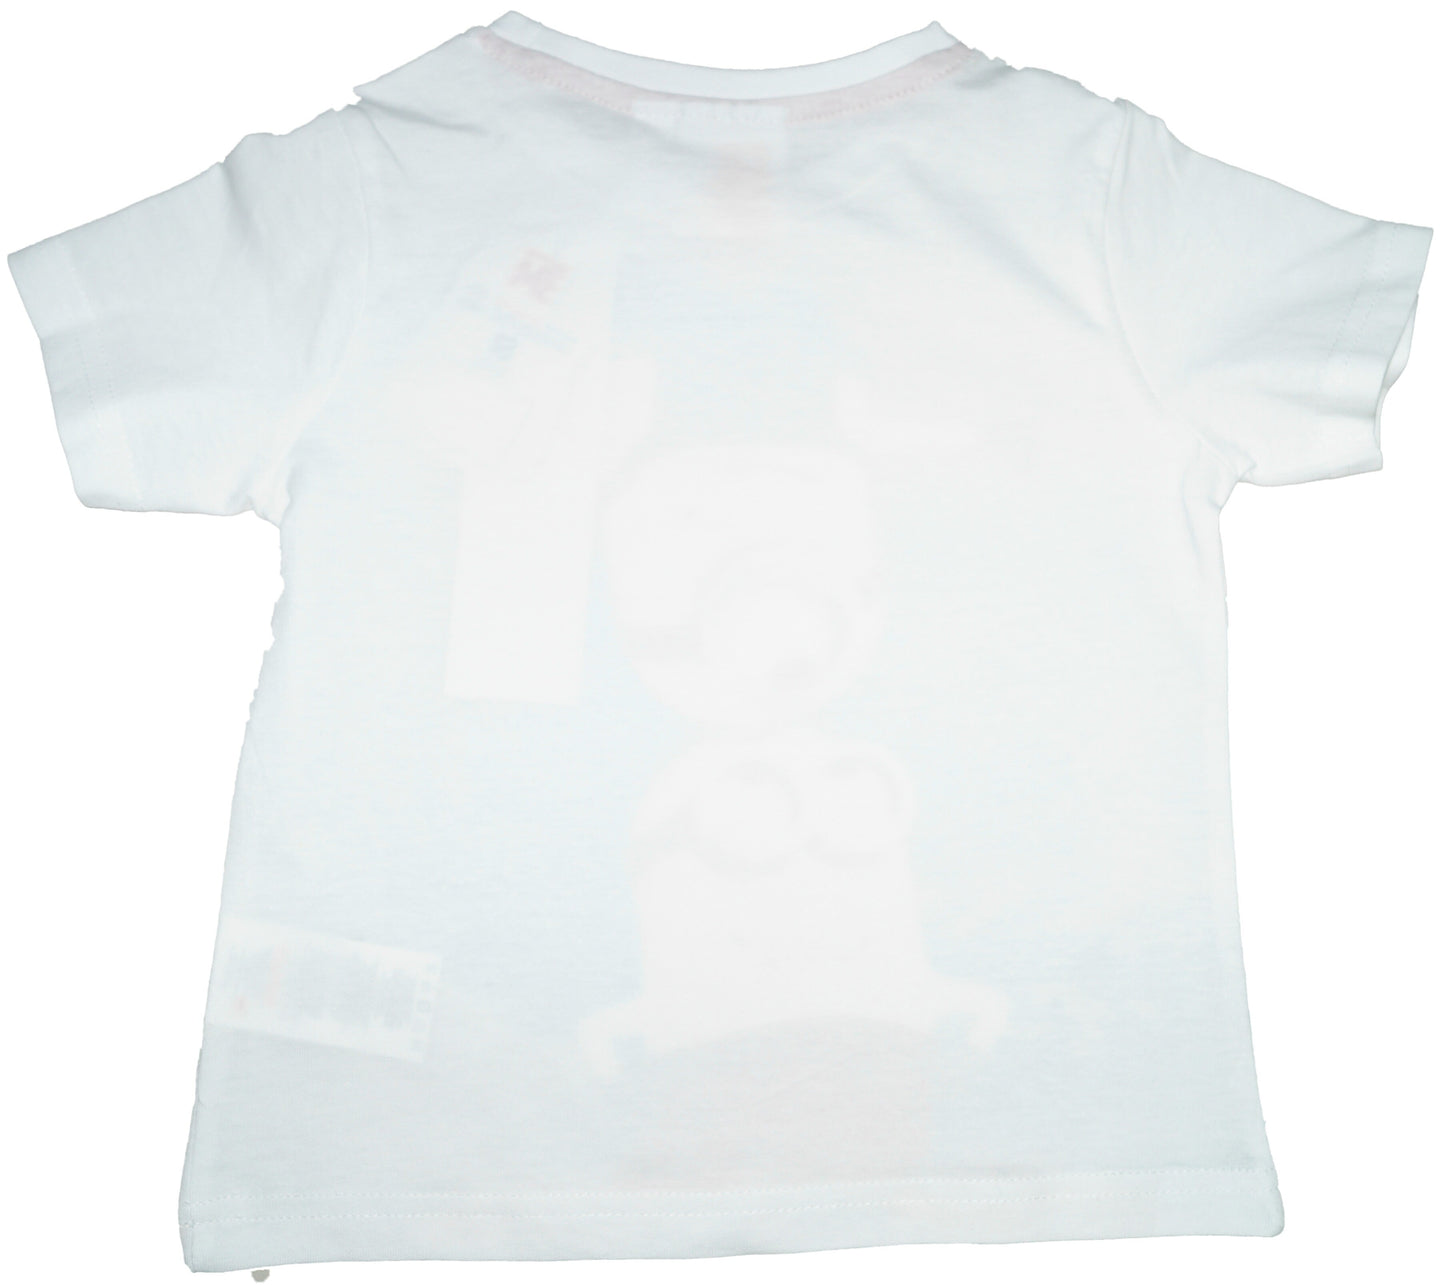 Kurzarmshirt für Jungen mit großem Minions Motiv Weiß | Fashion Königin